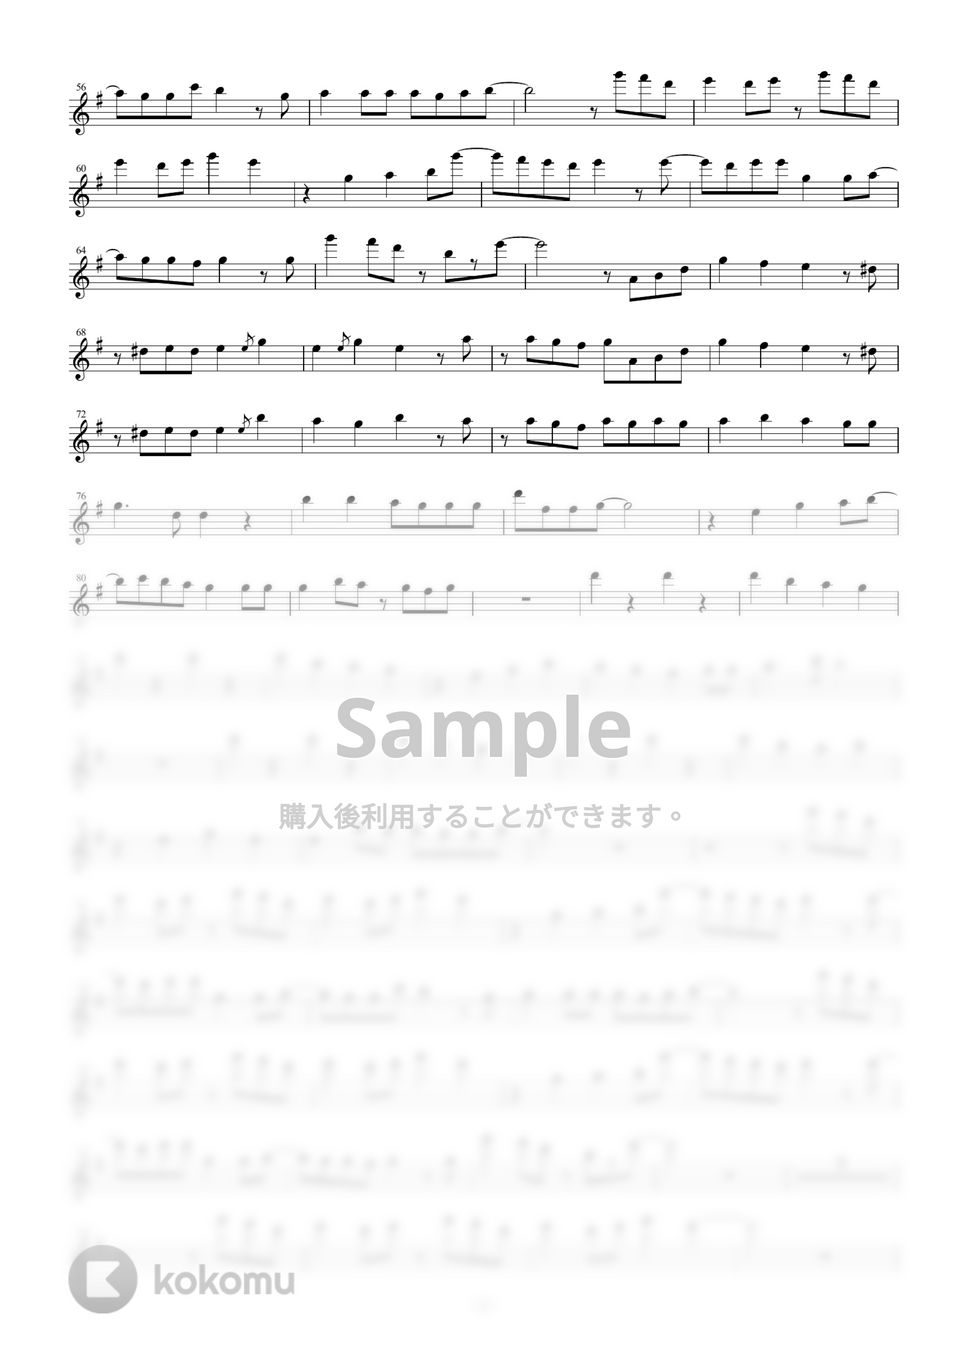 バルーン - 雨とペトラ (in E♭) by y.shiori